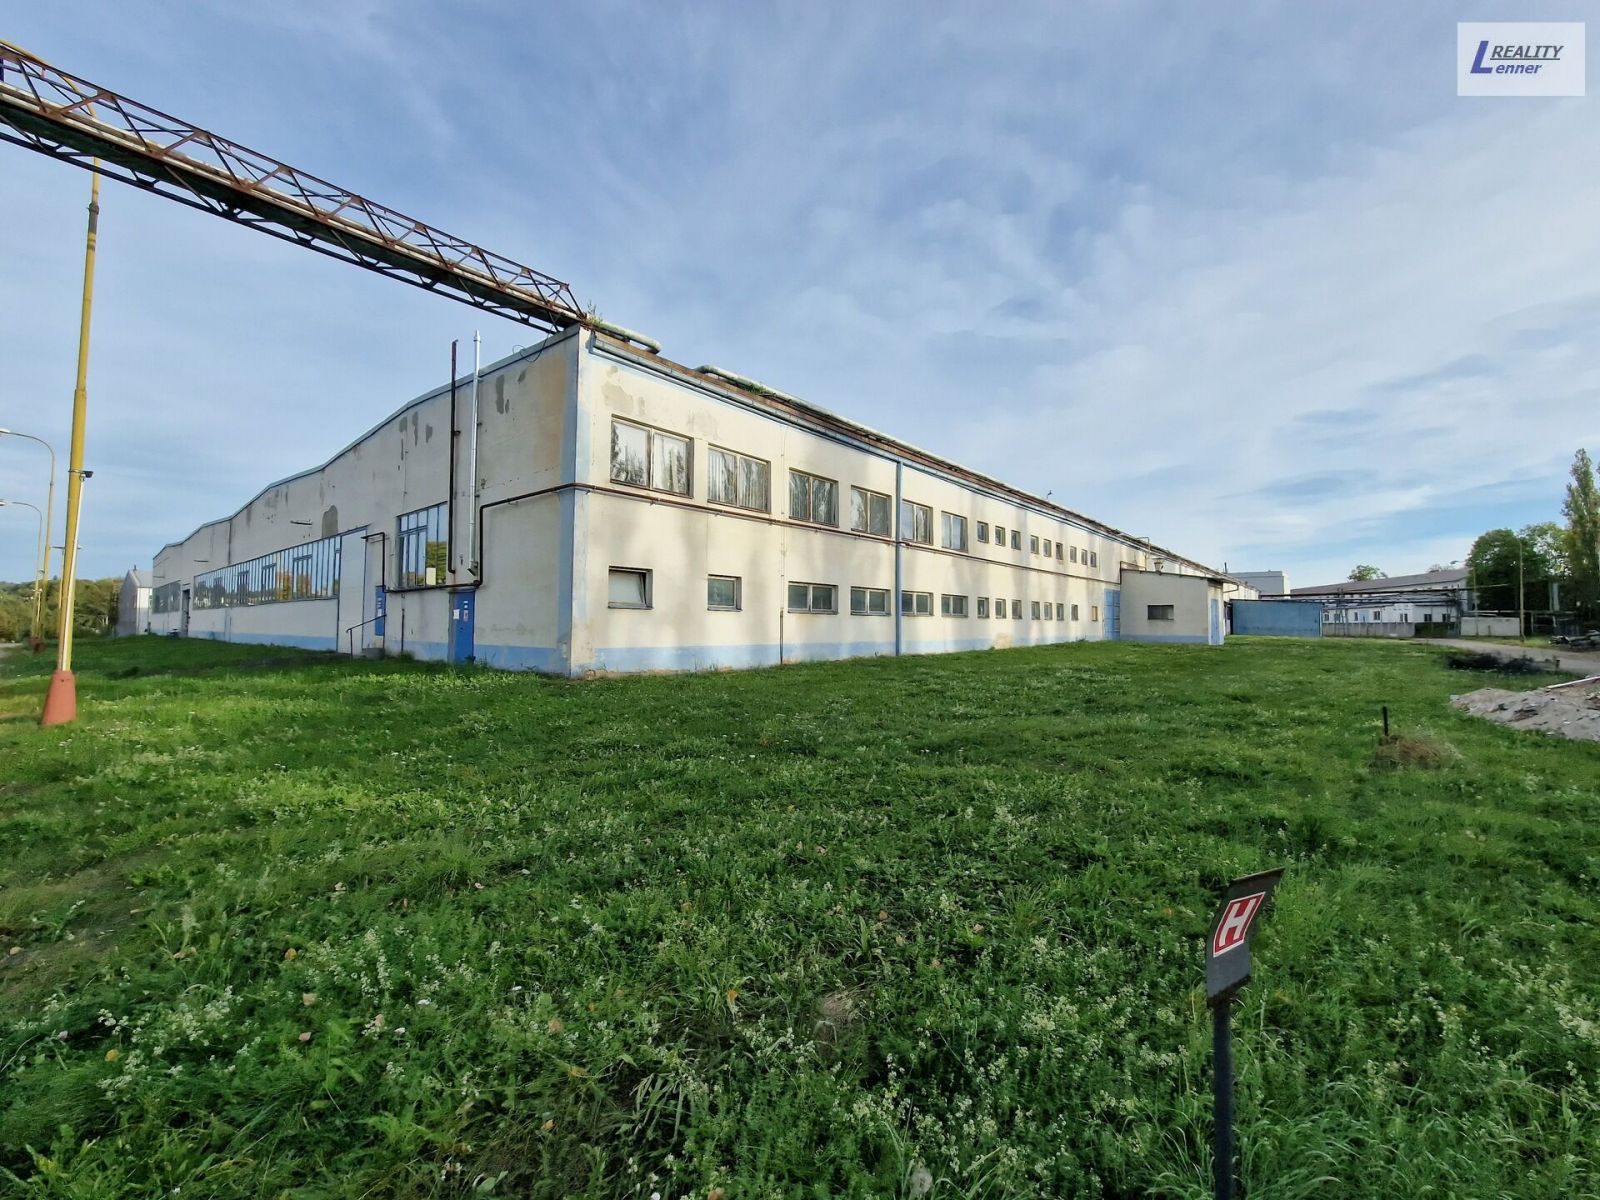 Komerční prostor, výrobní hala 900 m2, v průmyslovém areálu, ulice Obecnická, obrázek č. 1